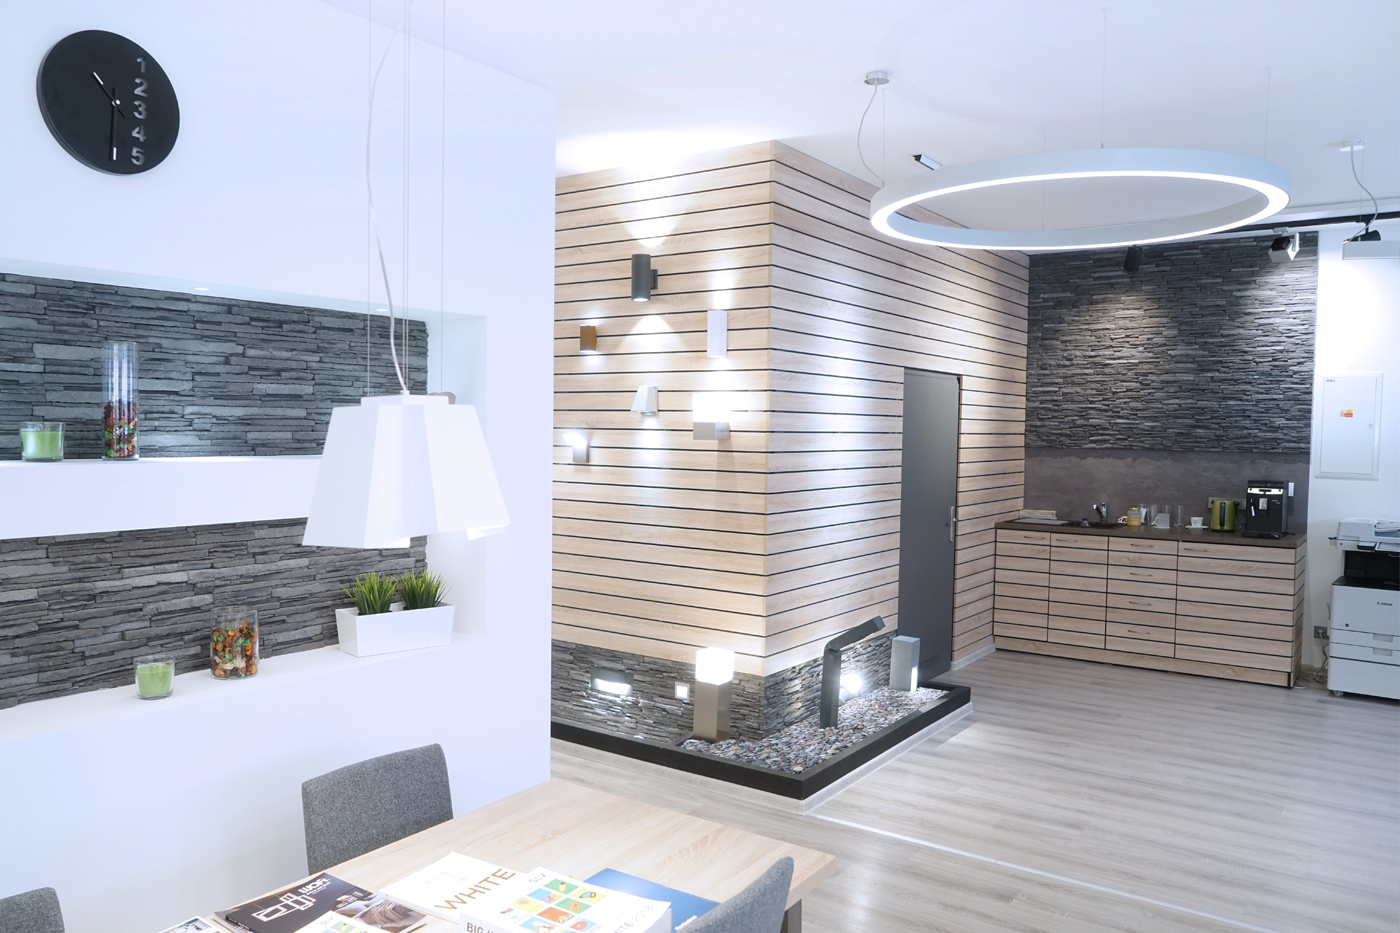 Venkovní a fasádní svítidla jsou prezentovány na zdi podobné moderní fasádě, která přechází do funkční kuchyňky.